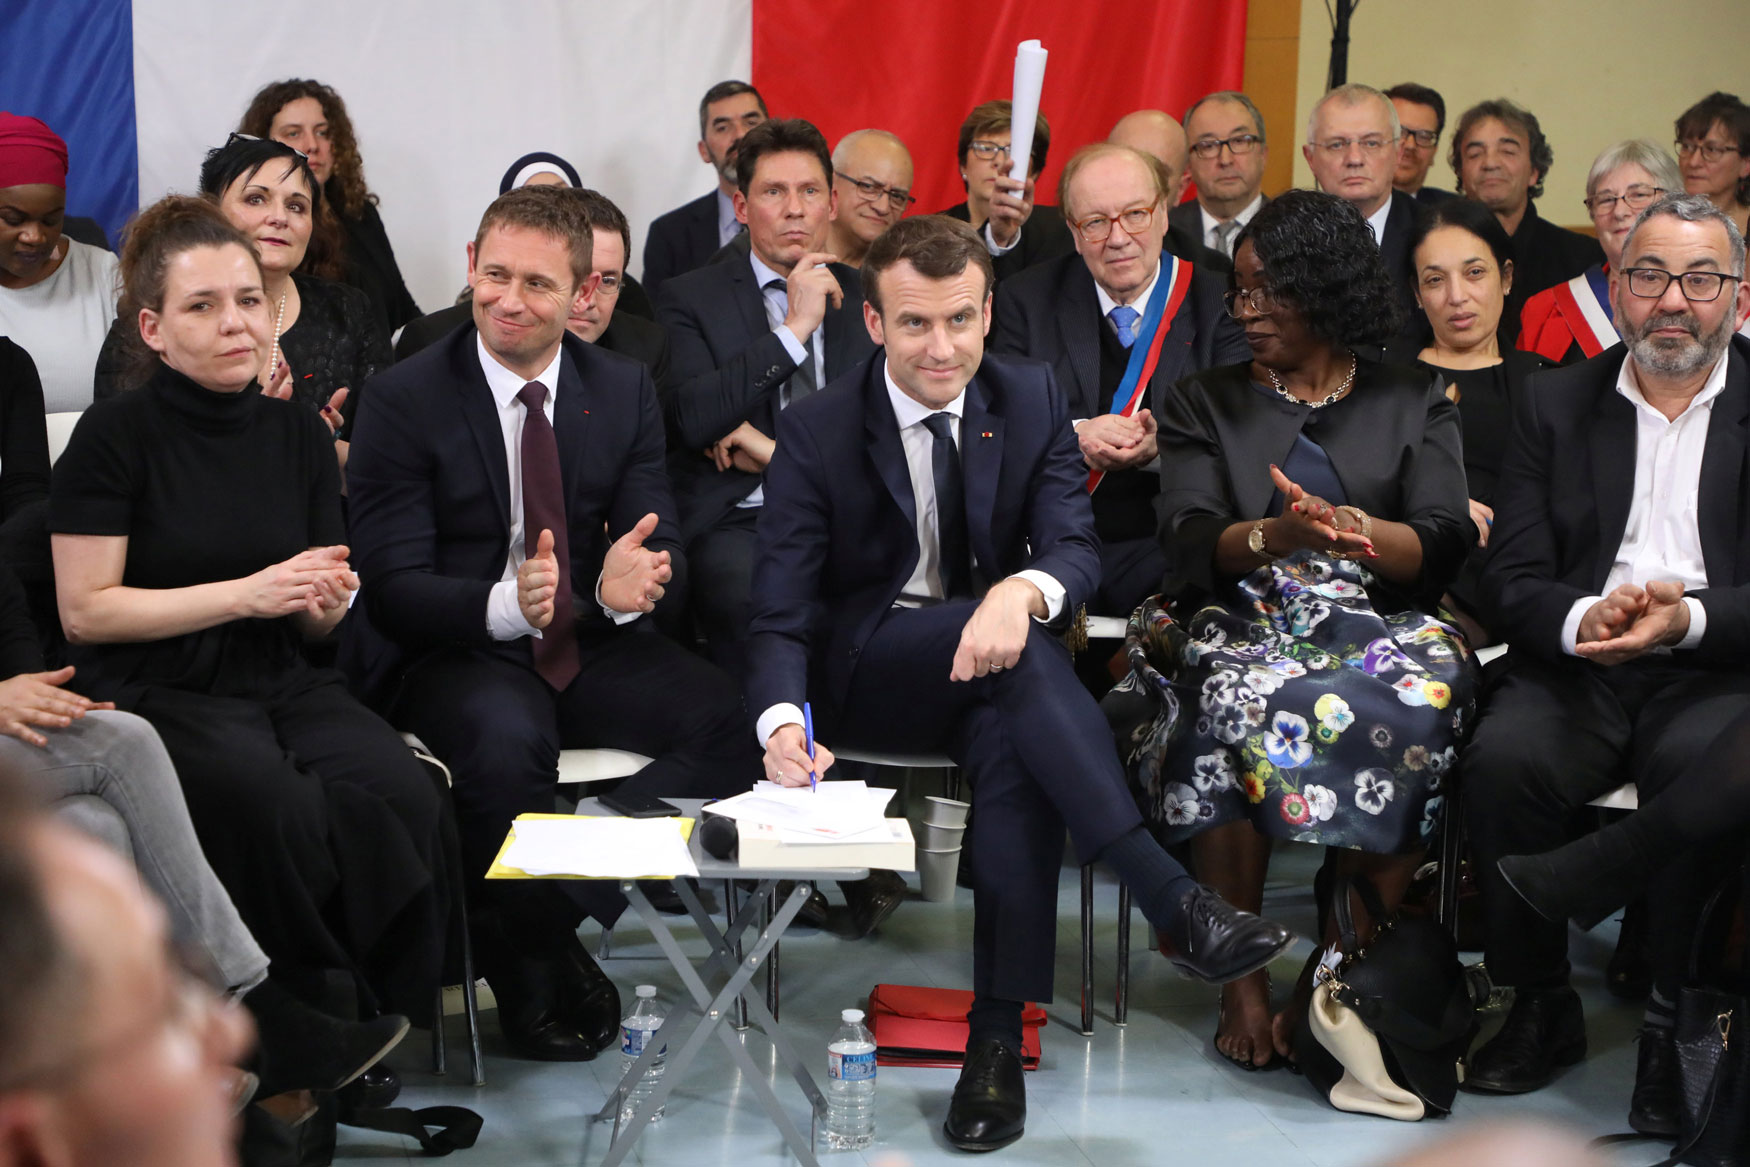 الرئيس الفرنسي امانويل ماكرون أطلق نقاشا وطنيا لاحتواء حراك السترات الصفراء